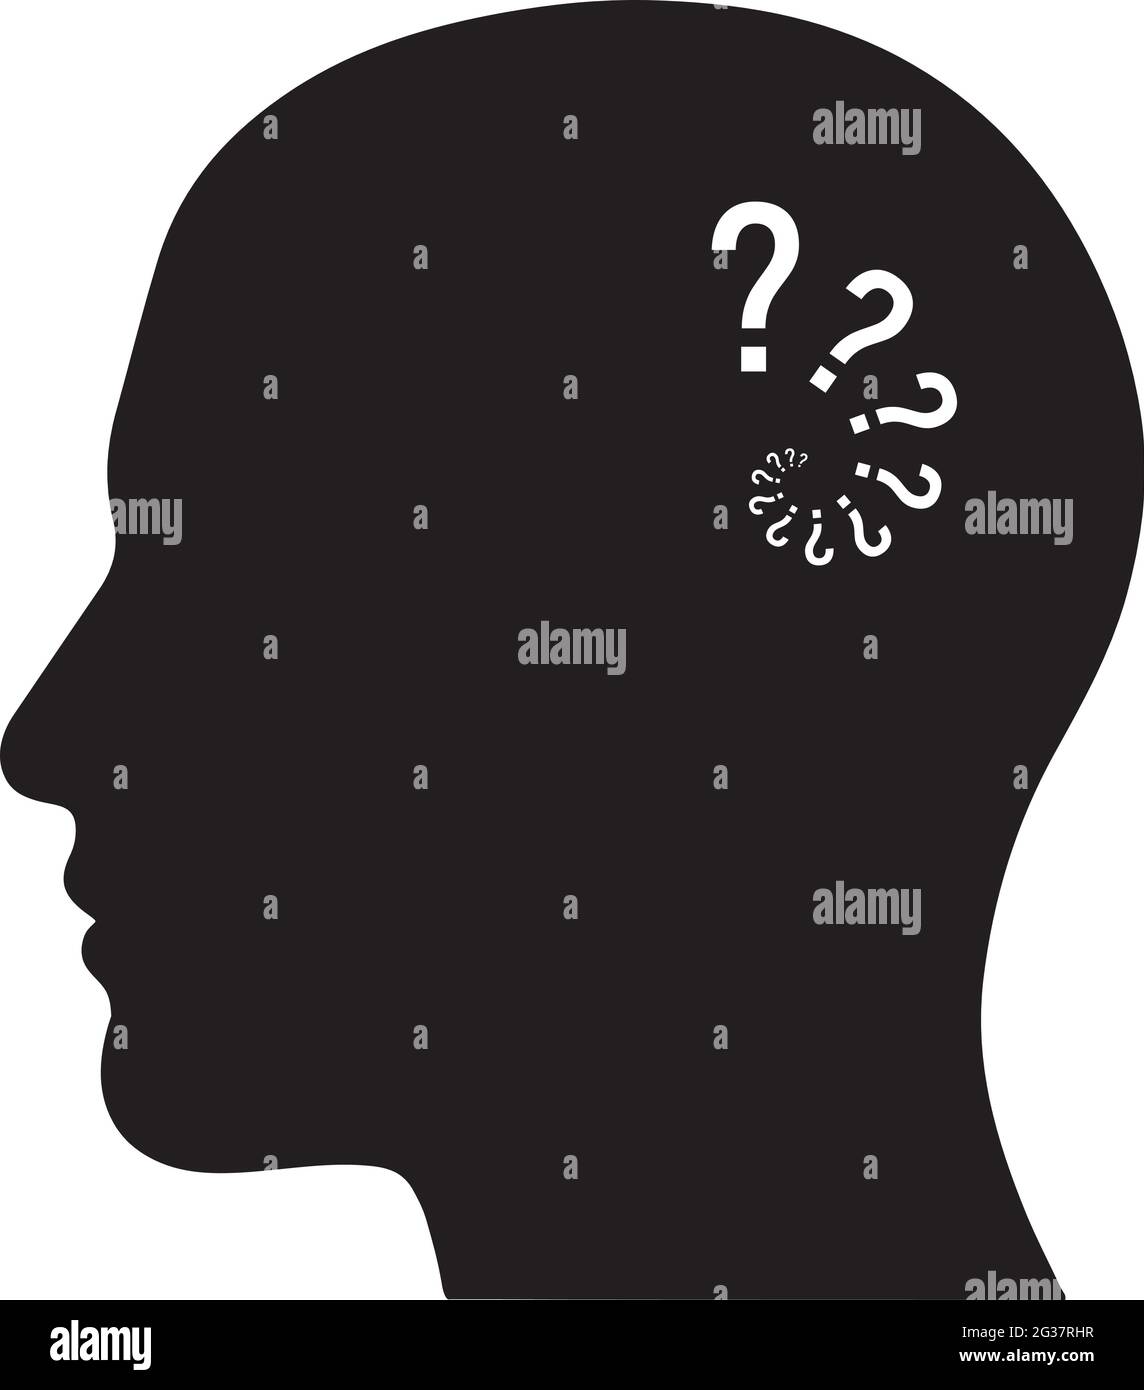 Figura vettoriale sagoma della testa umana con punti interrogativi che indicano confusione o malattia di Alzheimers Illustrazione Vettoriale